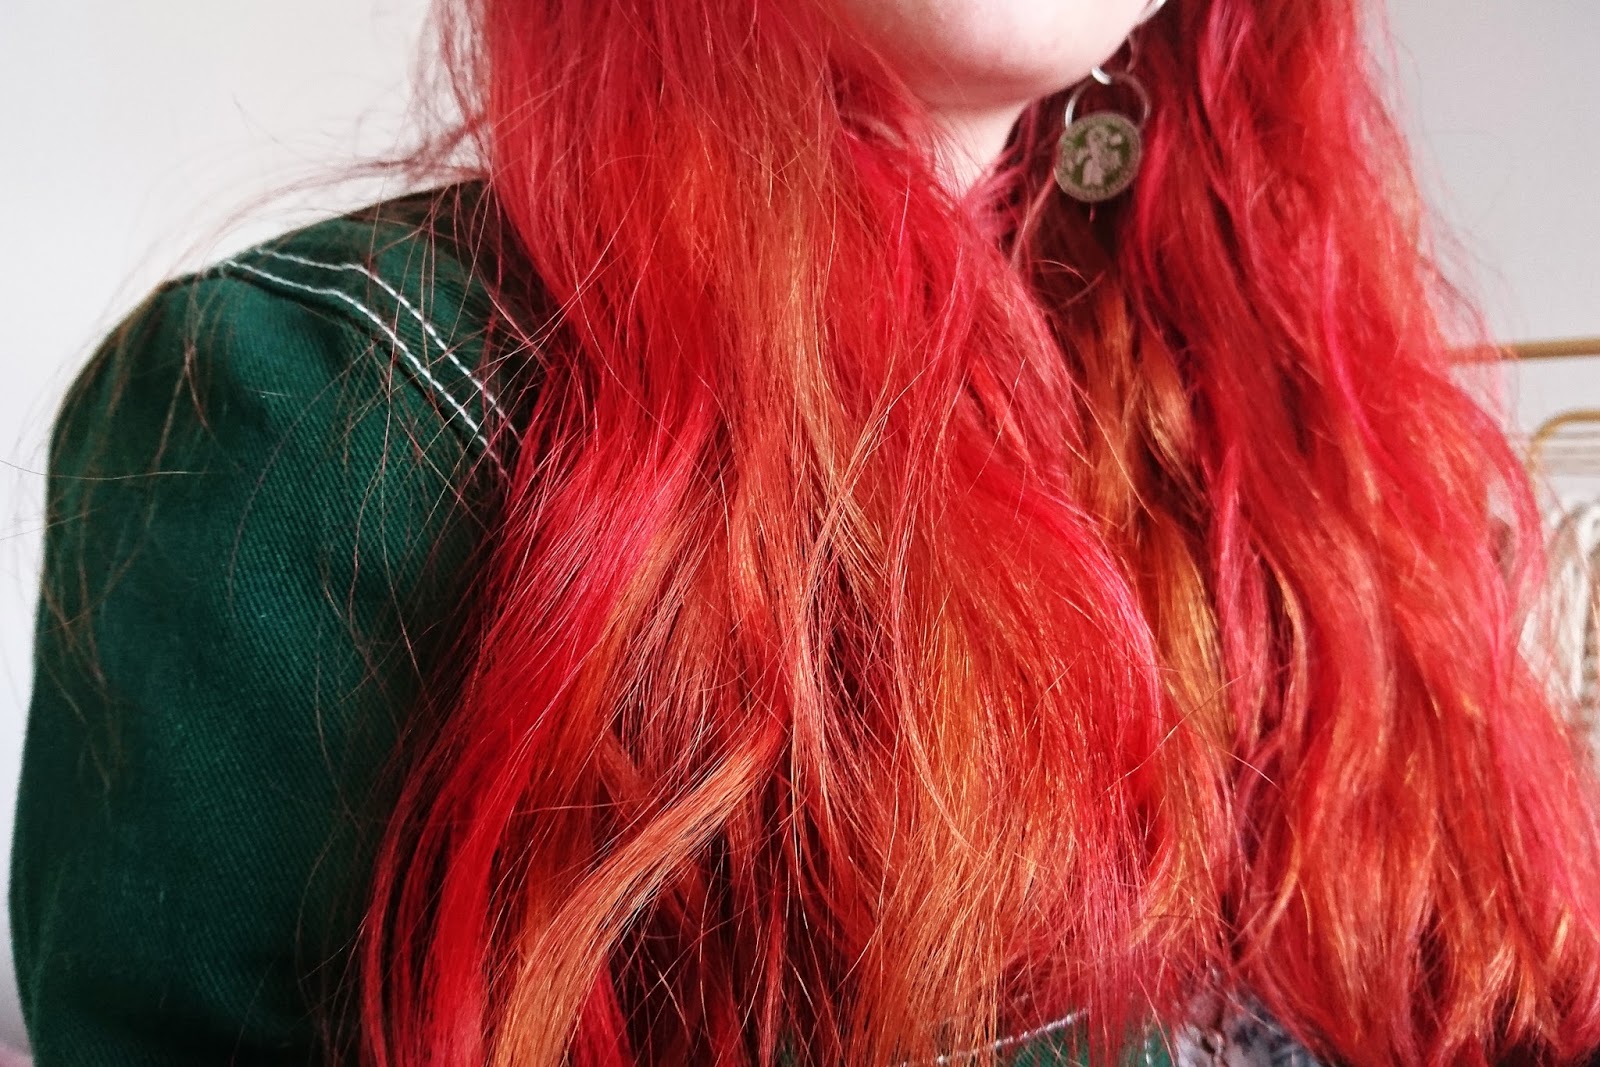 Review Colour Freedom S Crimson Red Vegan Dye On Virgin Hair